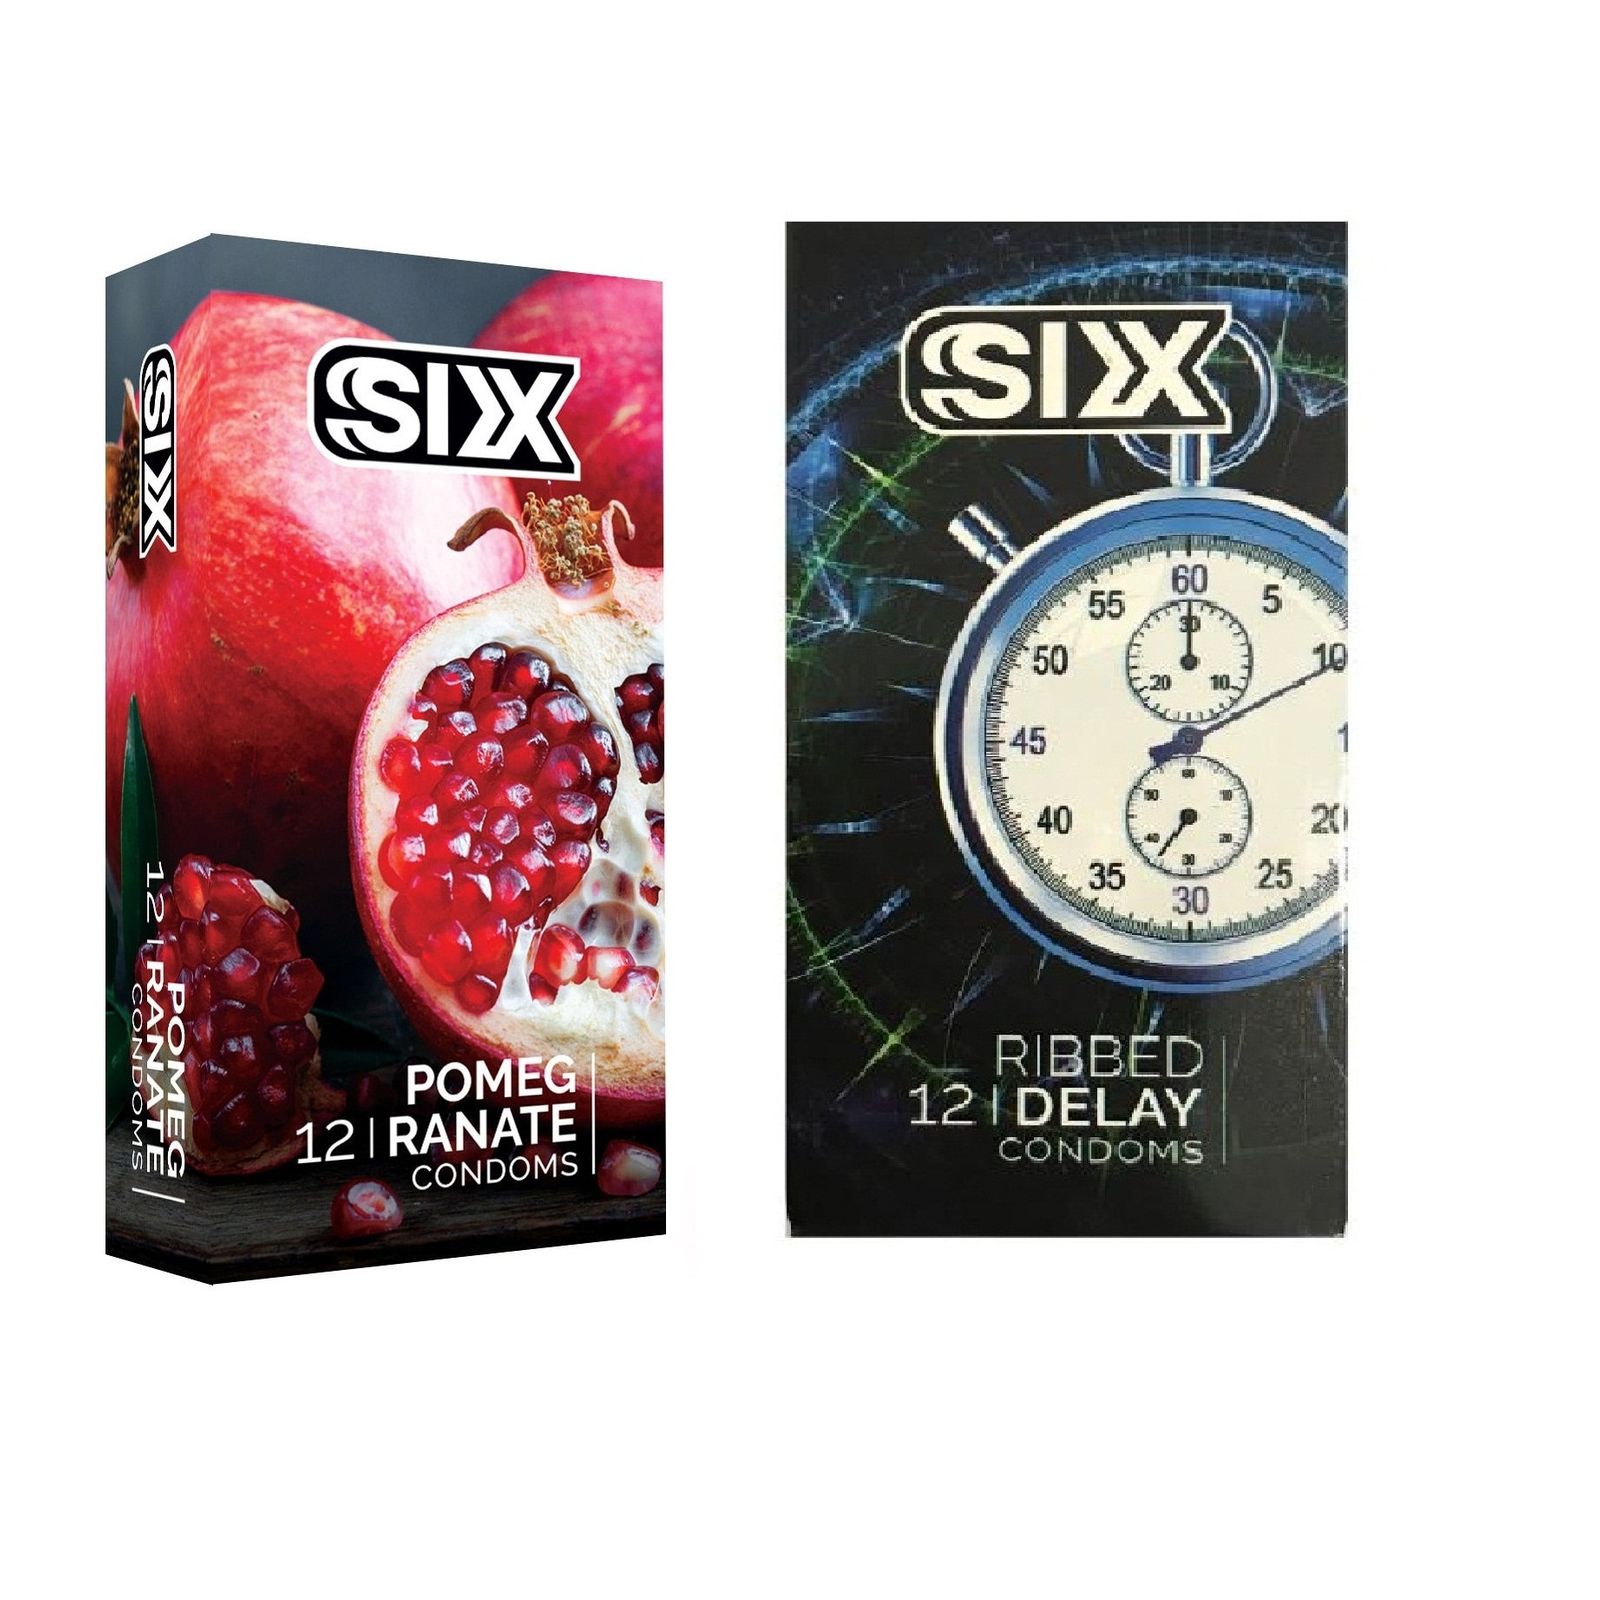 کاندوم سیکس مدل Pomegranate بسته 12 عددی به همراه کاندوم سیکس مدل Ribbed Delay بسته 12 عددی -  - 1